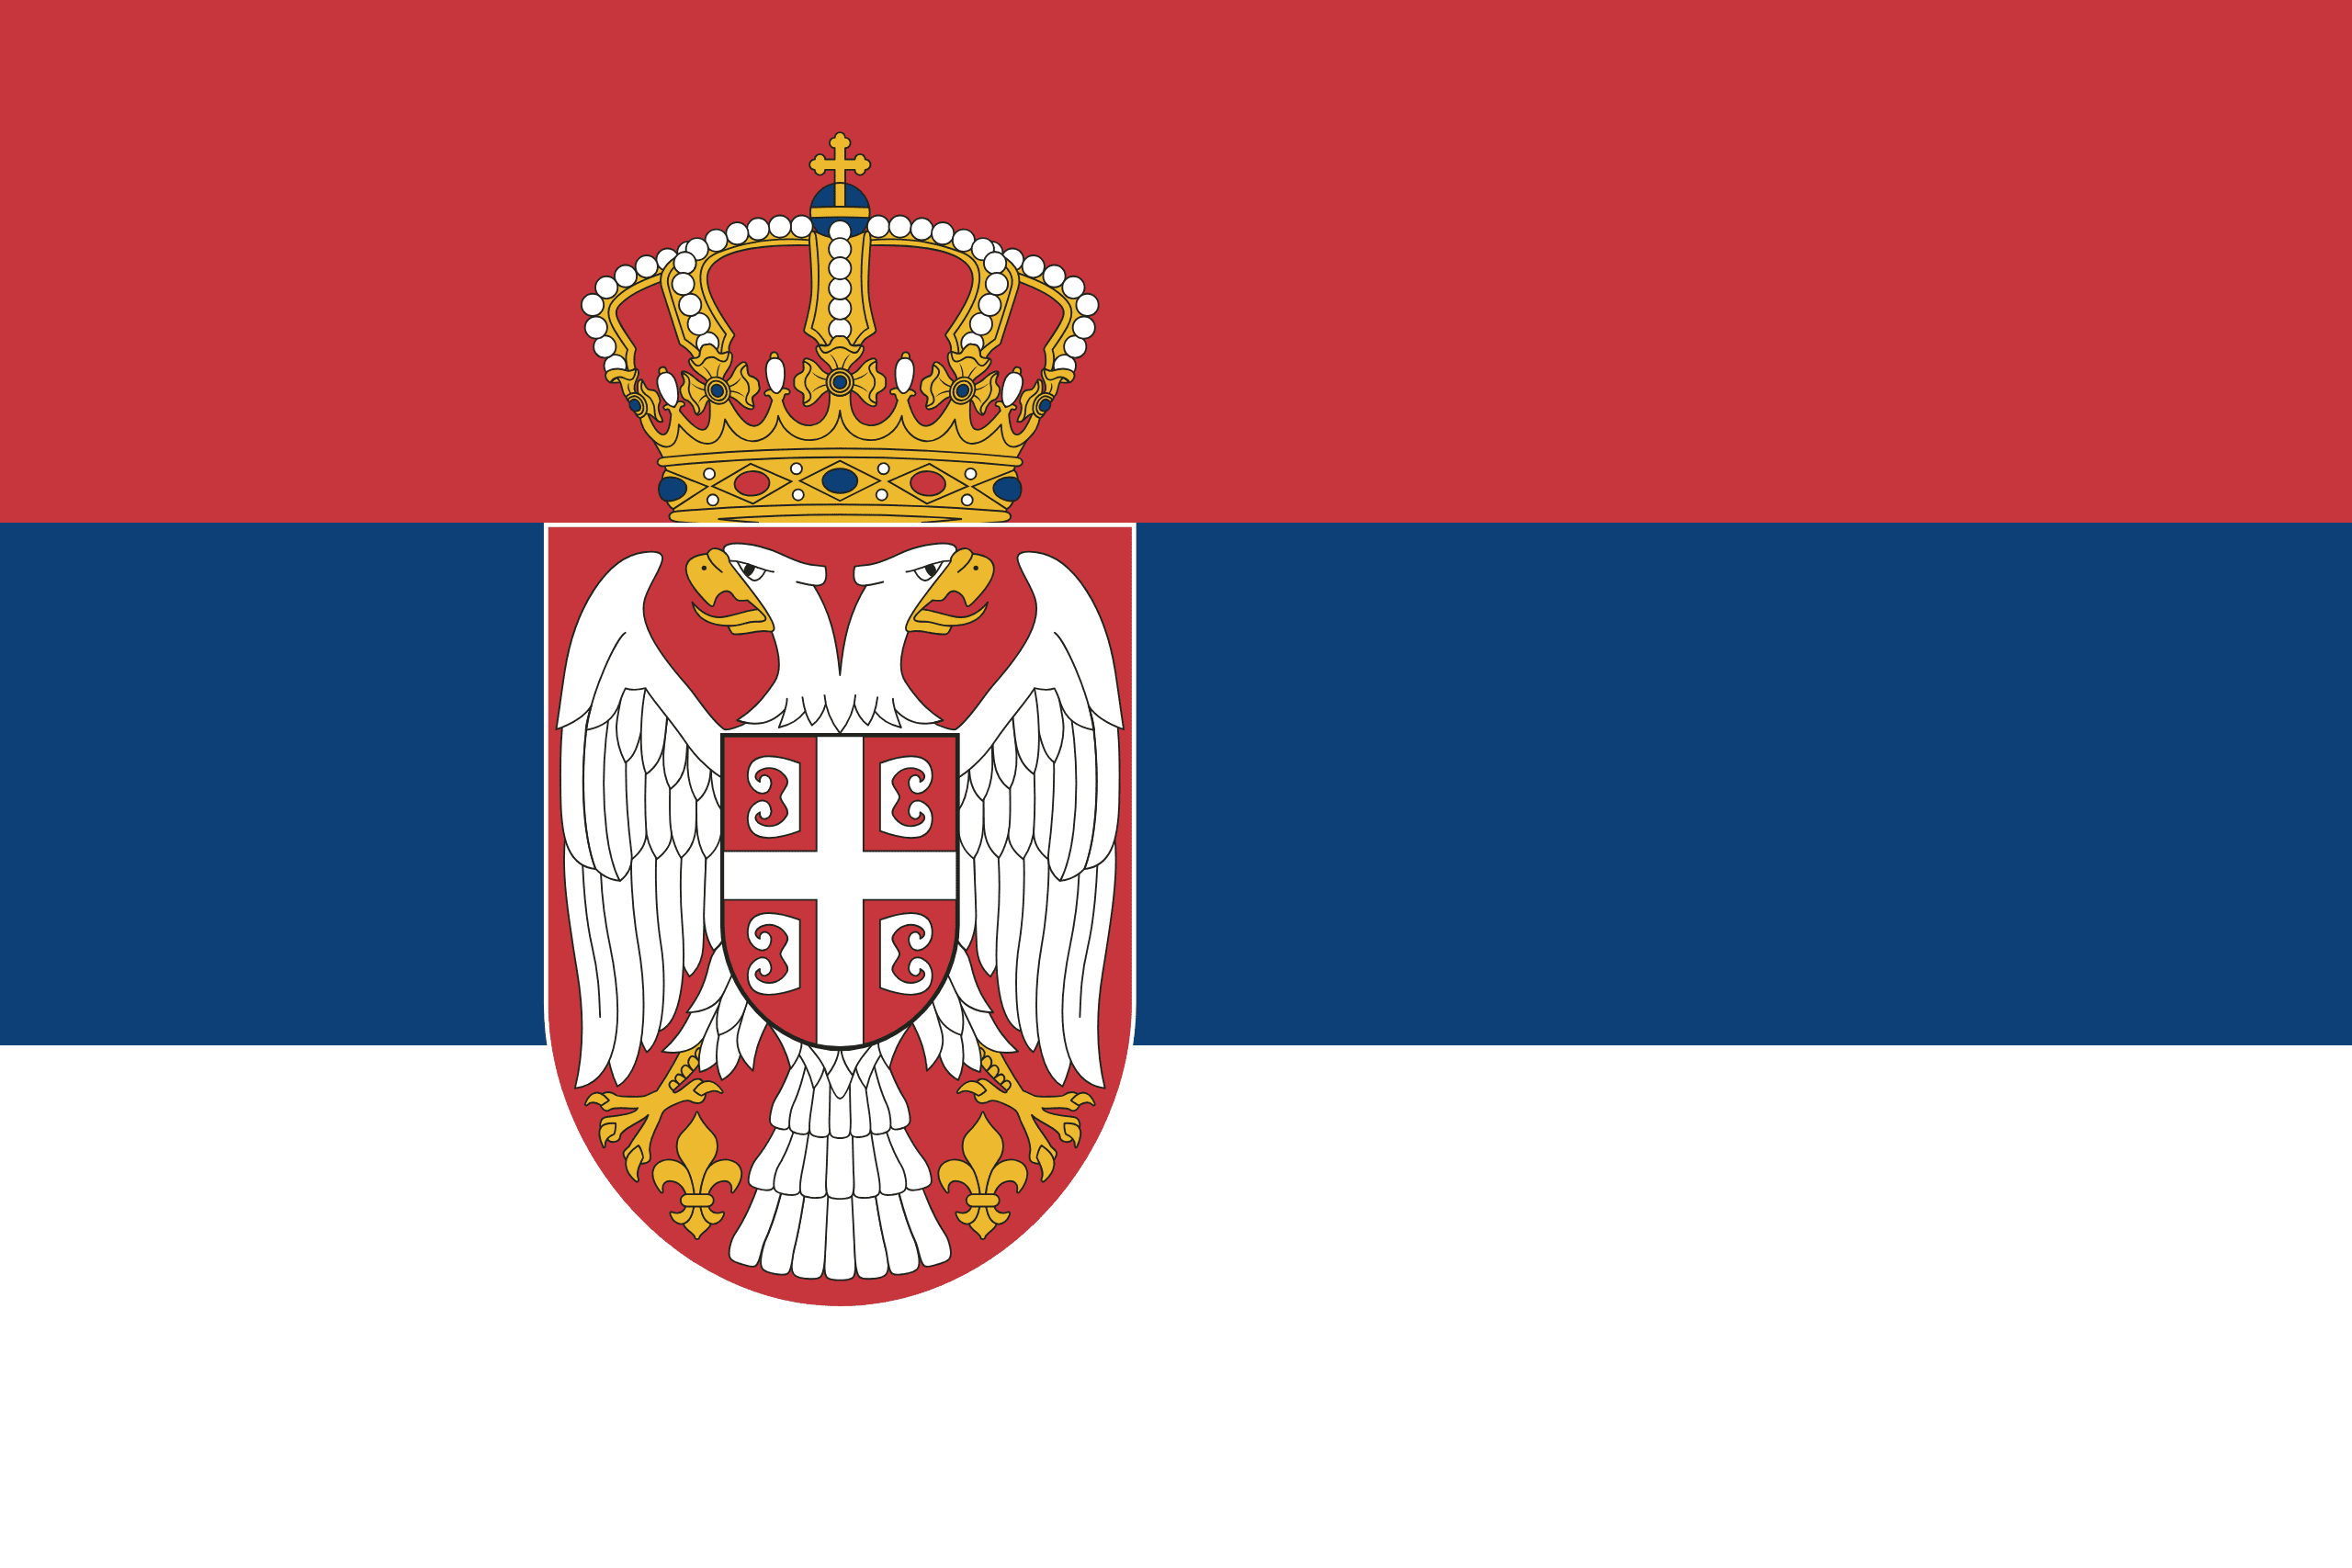 Resultado de imagen para bandera de serbia